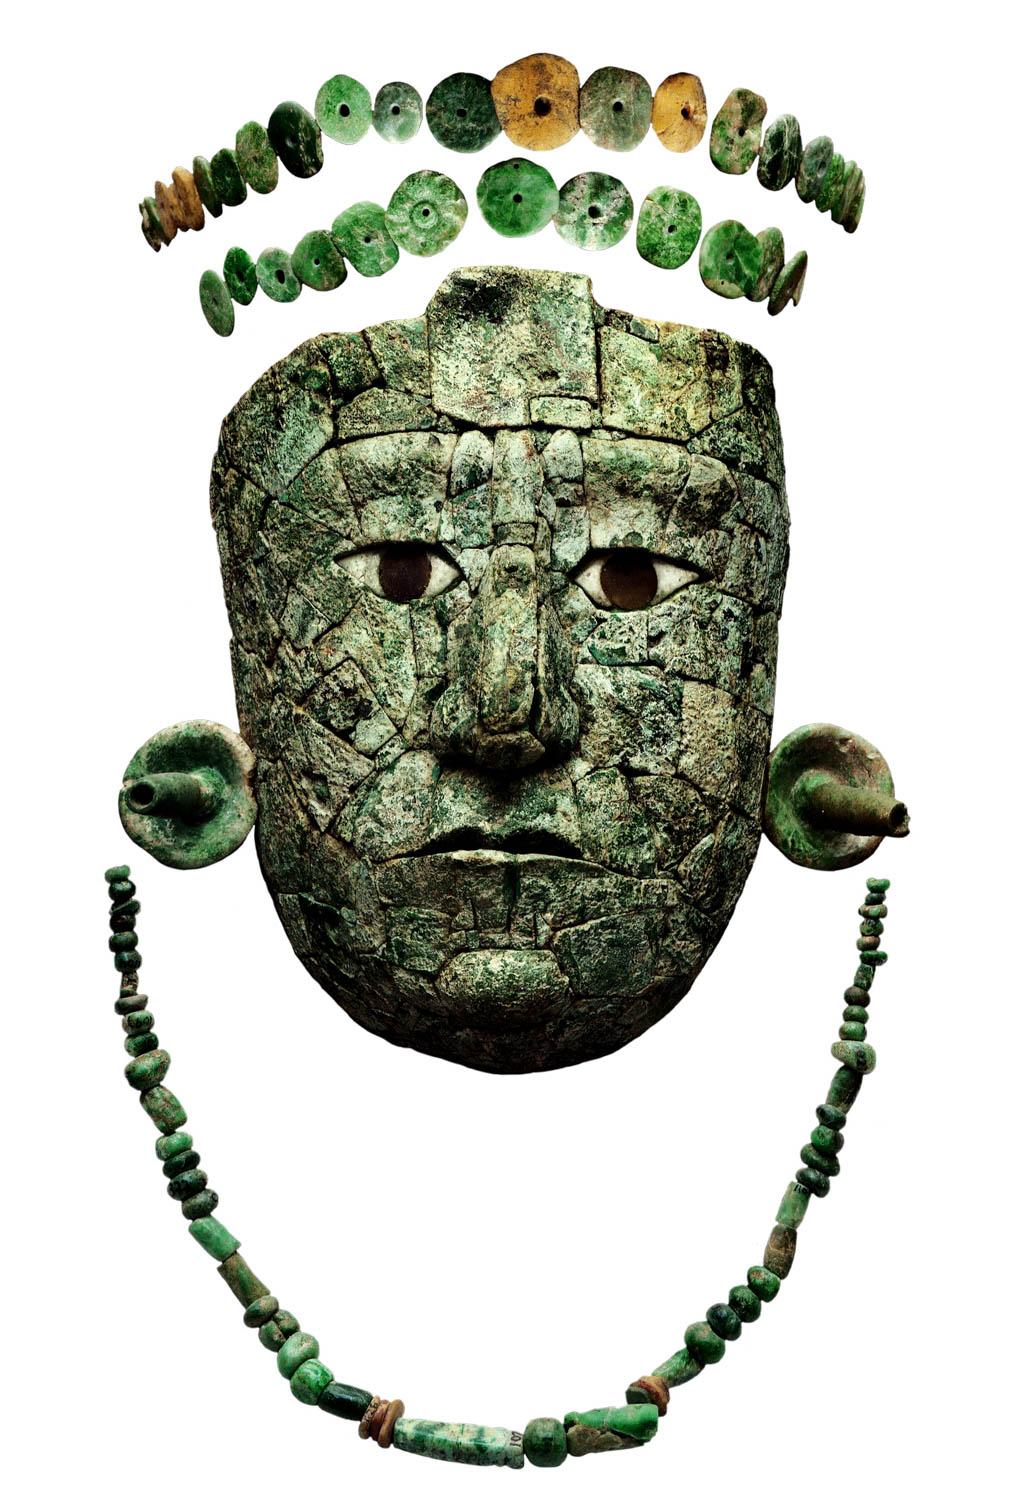 高度な文化の奥深さと魅力に迫る特別展『古代メキシコ ―マヤ、アステカ、テオティワカン』 - Slide:4